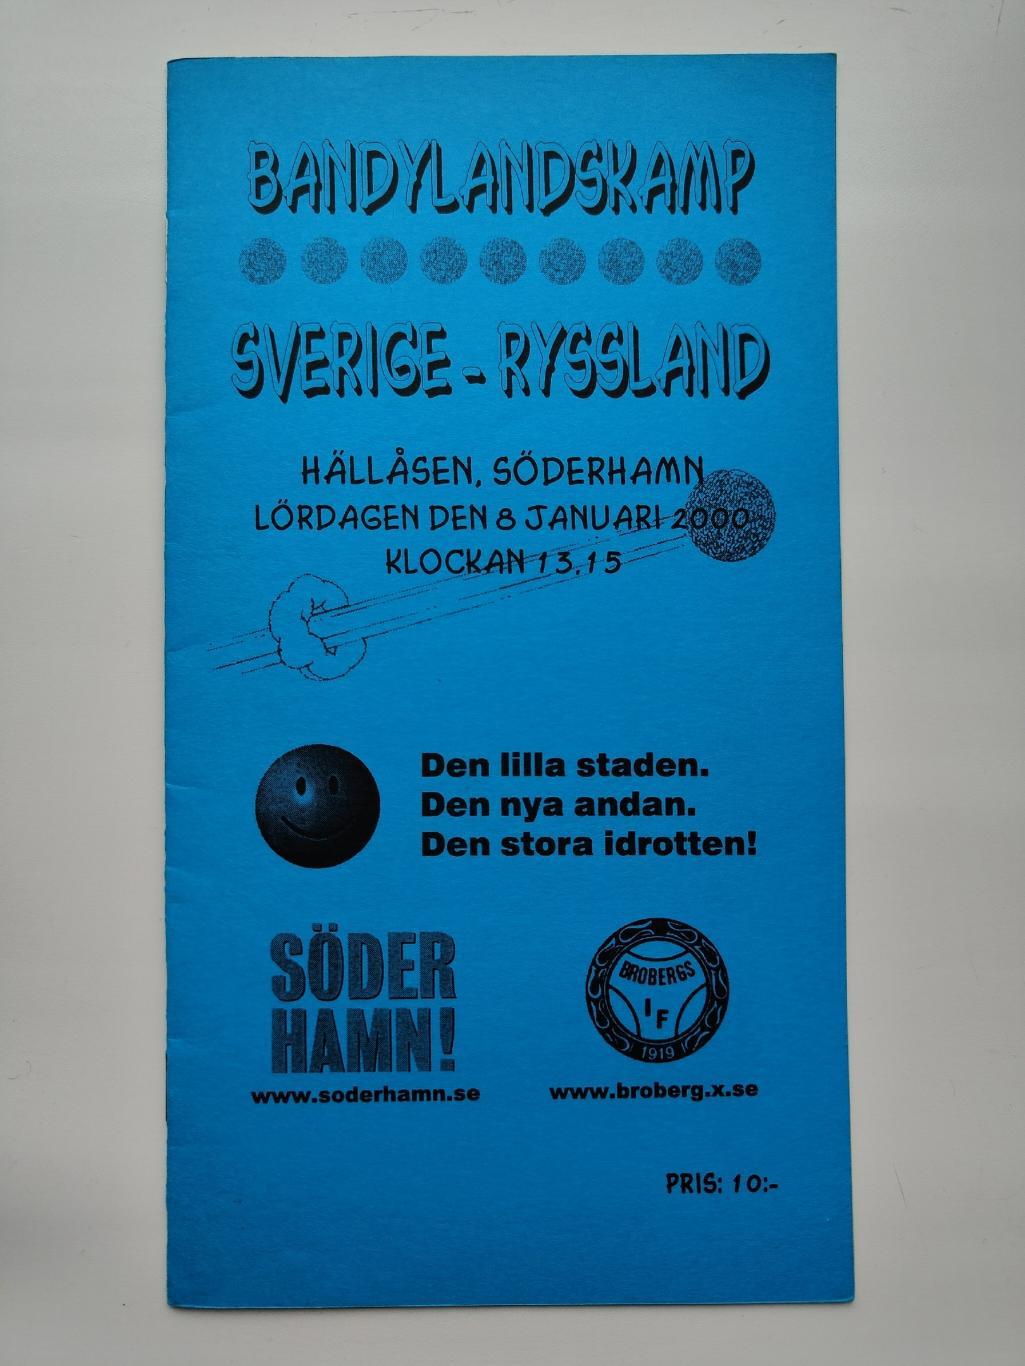 Хоккей с мячом. Швеция - Россия 8 января 2000 ТМ